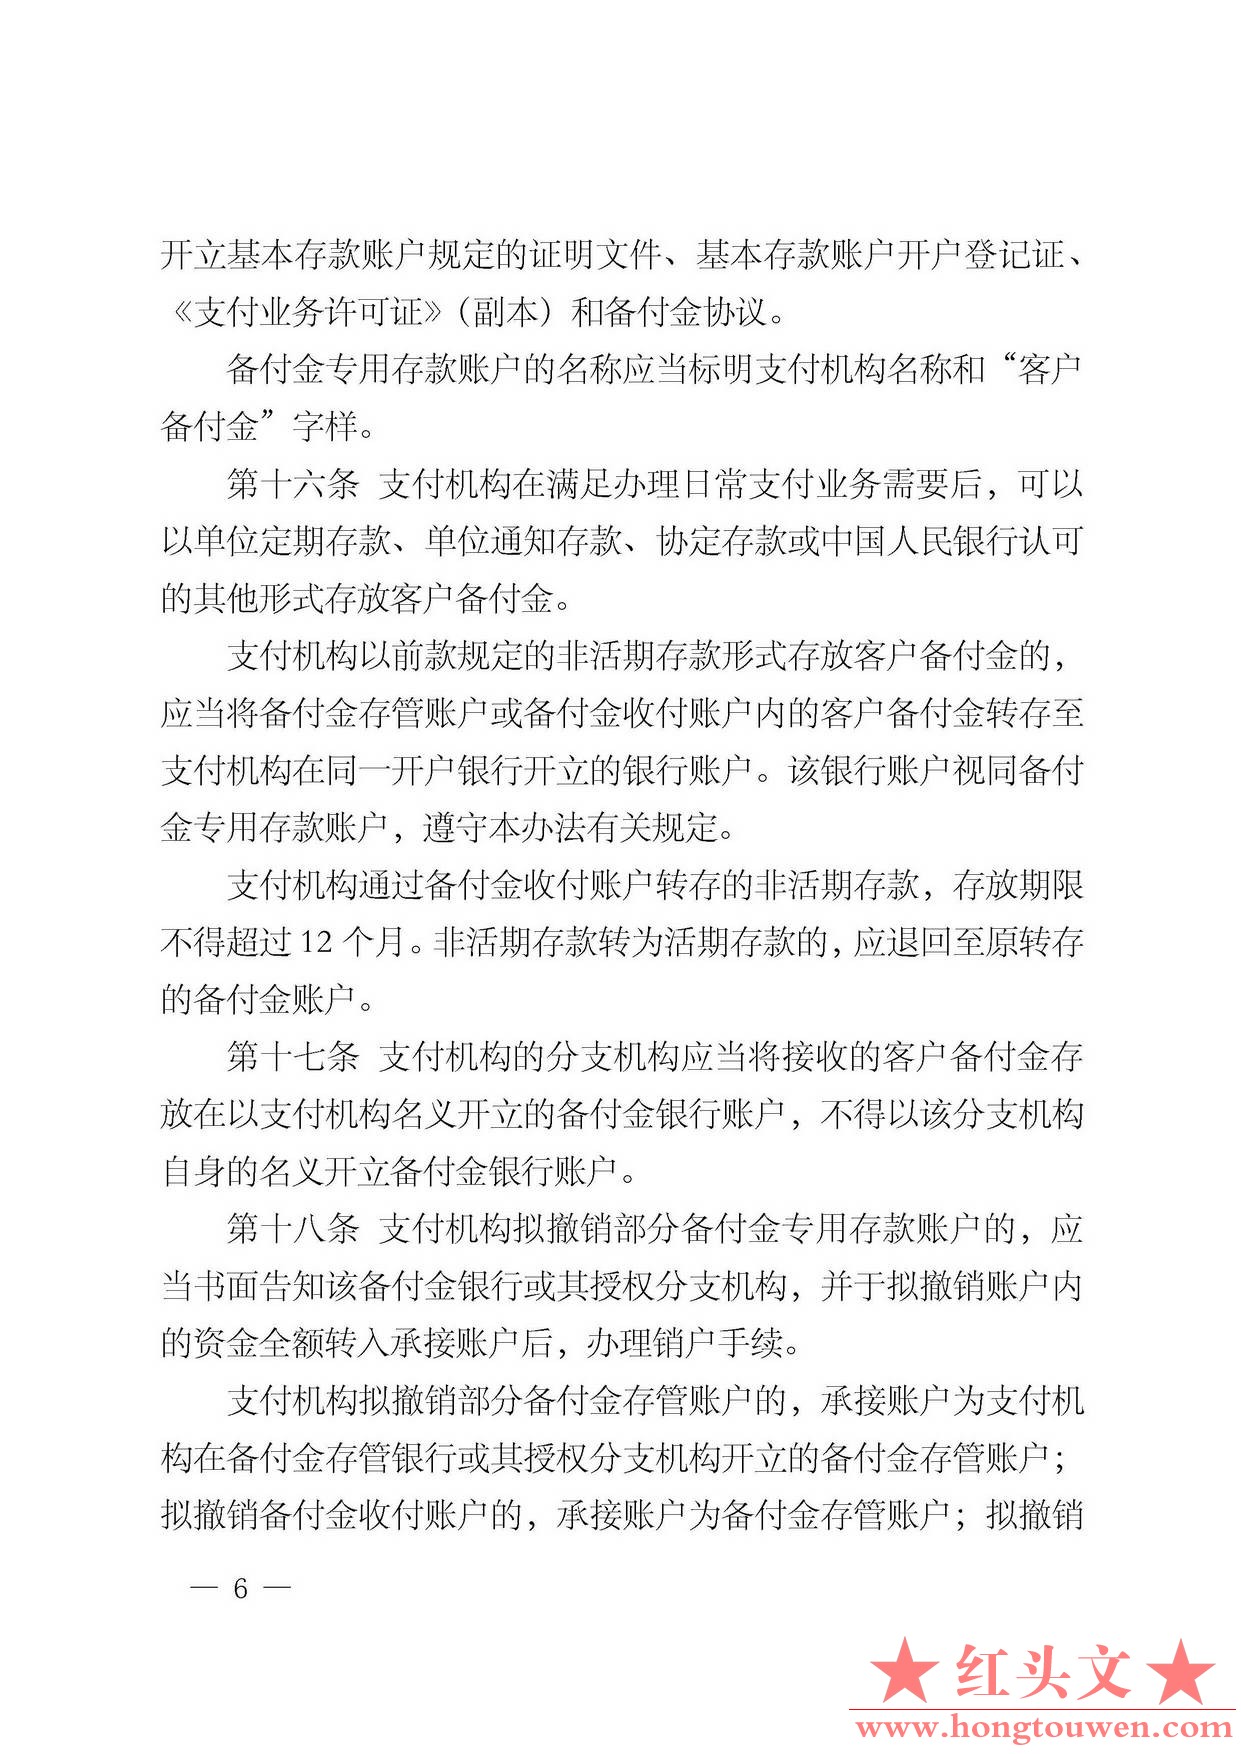 中国人民银行公告[2013]6号-《支付机构客户备付金存管办法》_页面_06.jpg.jpg